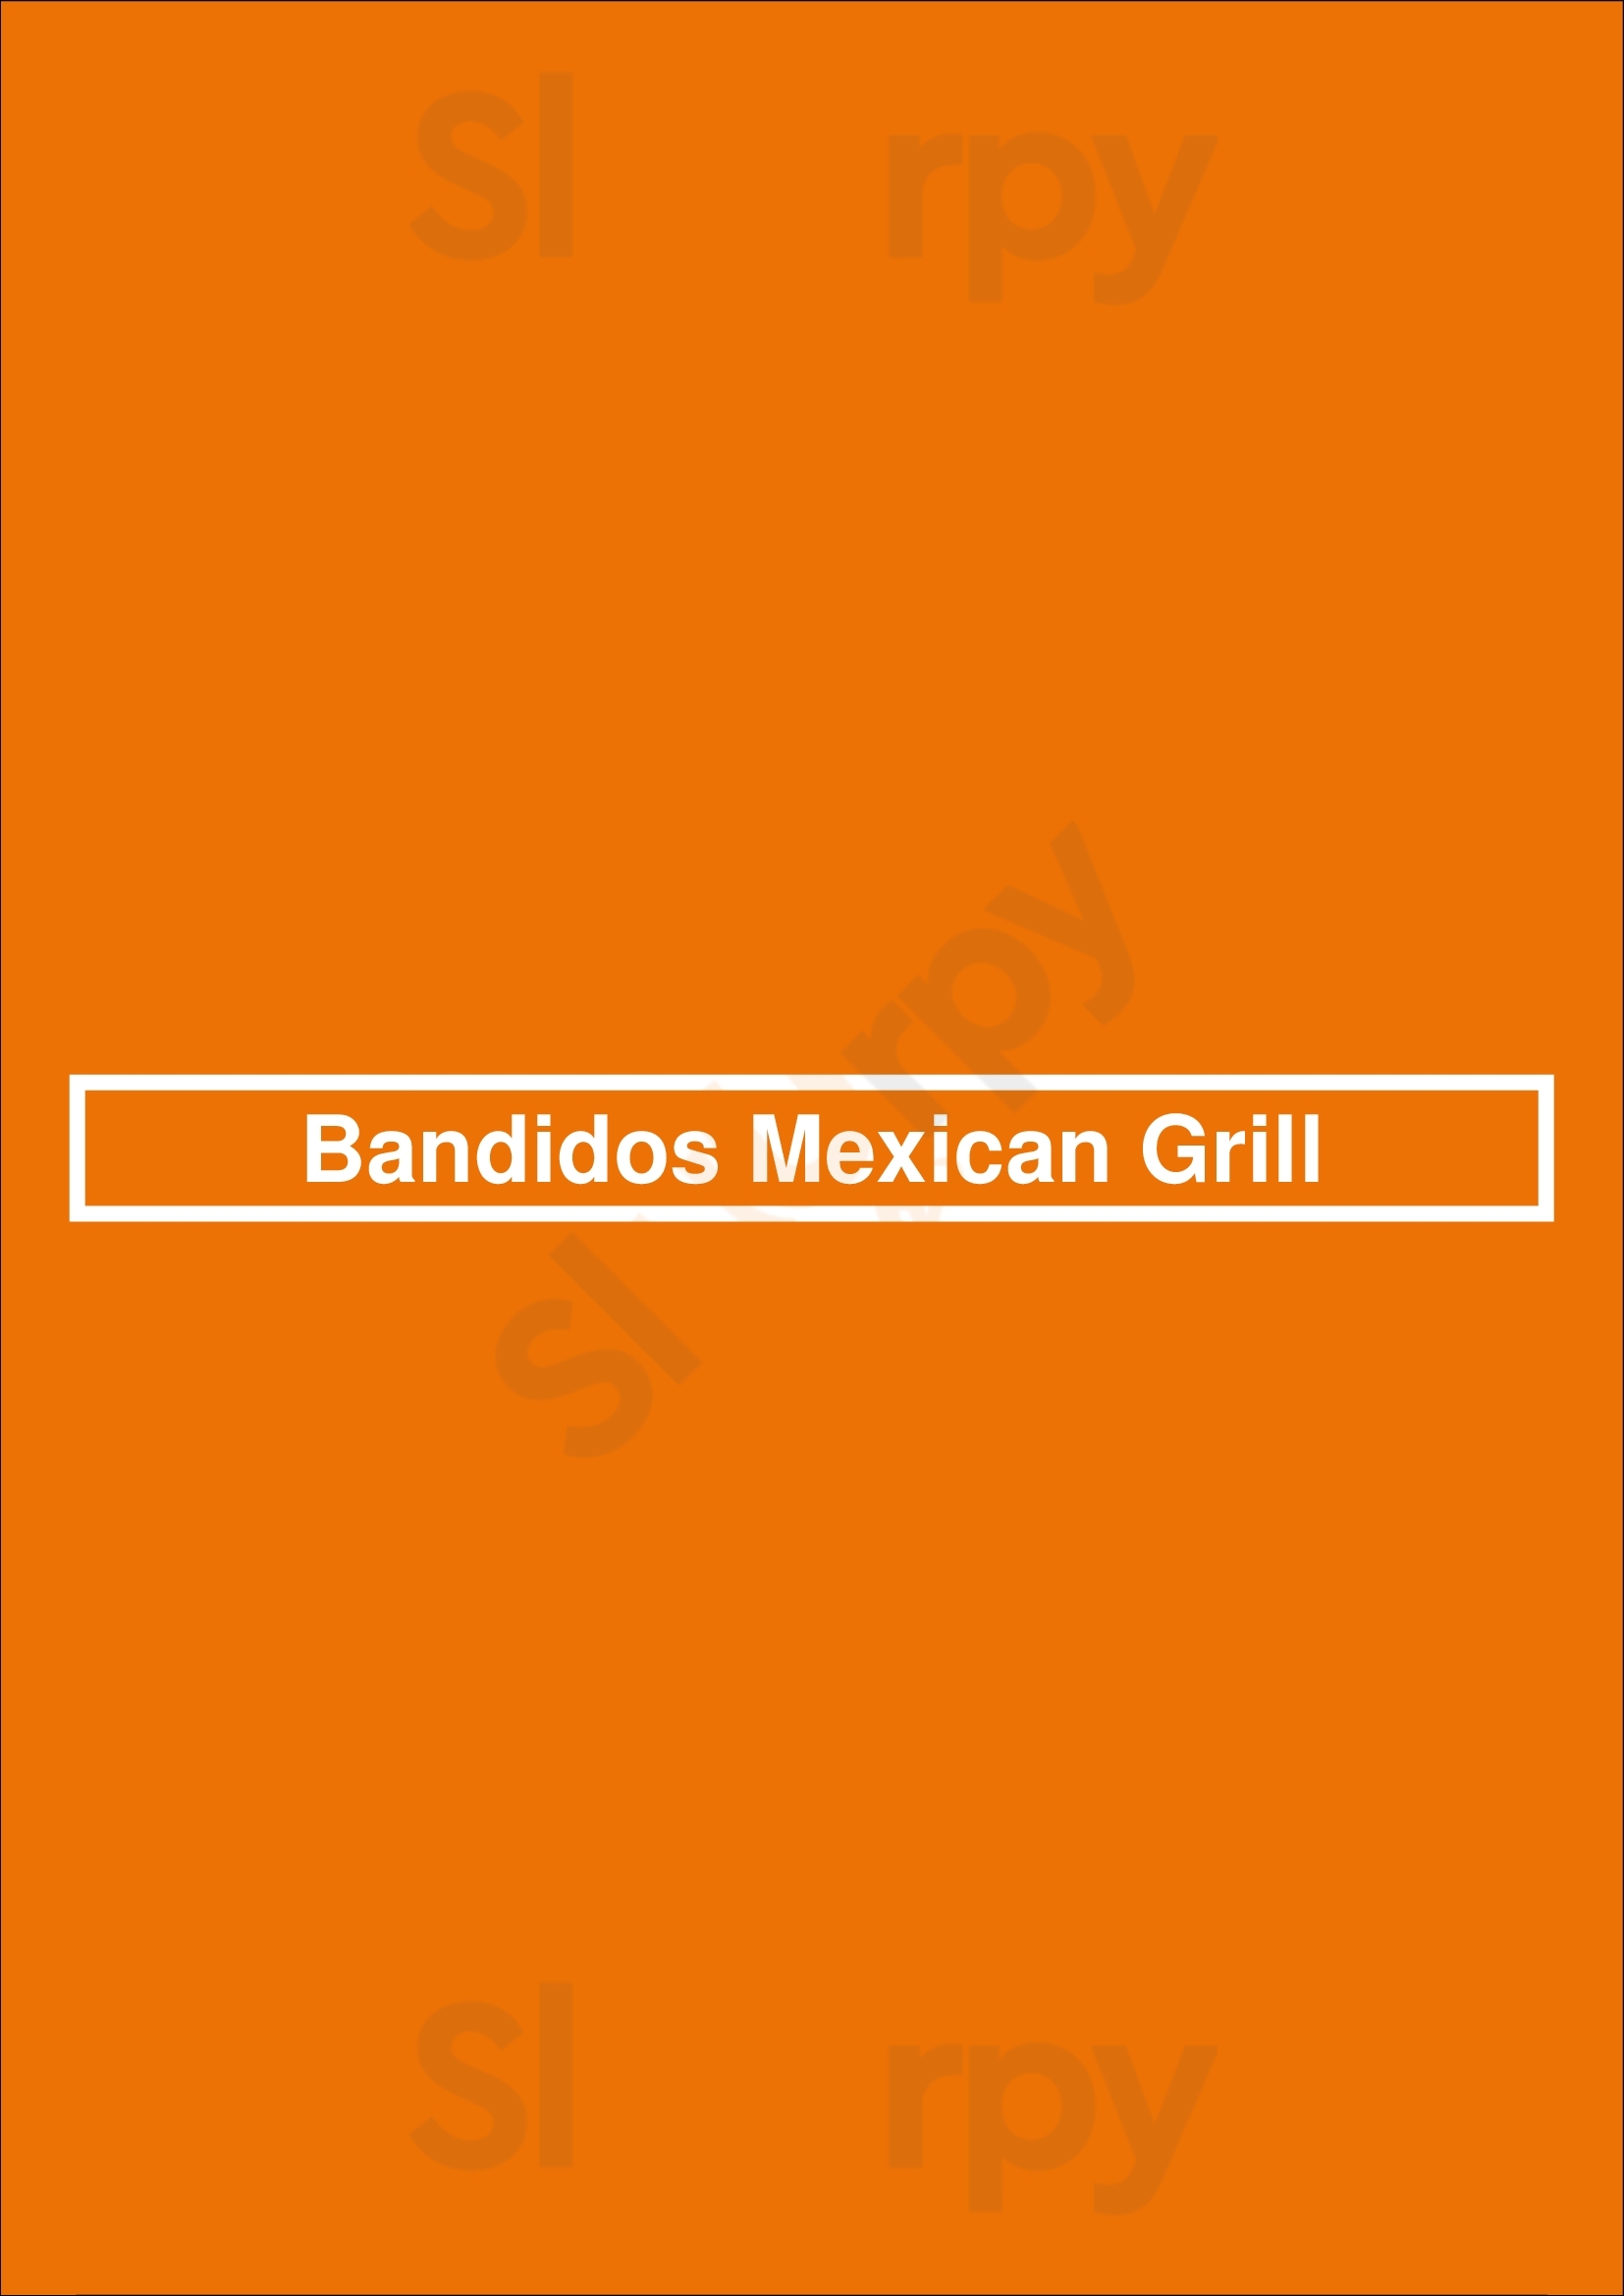 Bandidos Mexican Grill Nampa Menu - 1